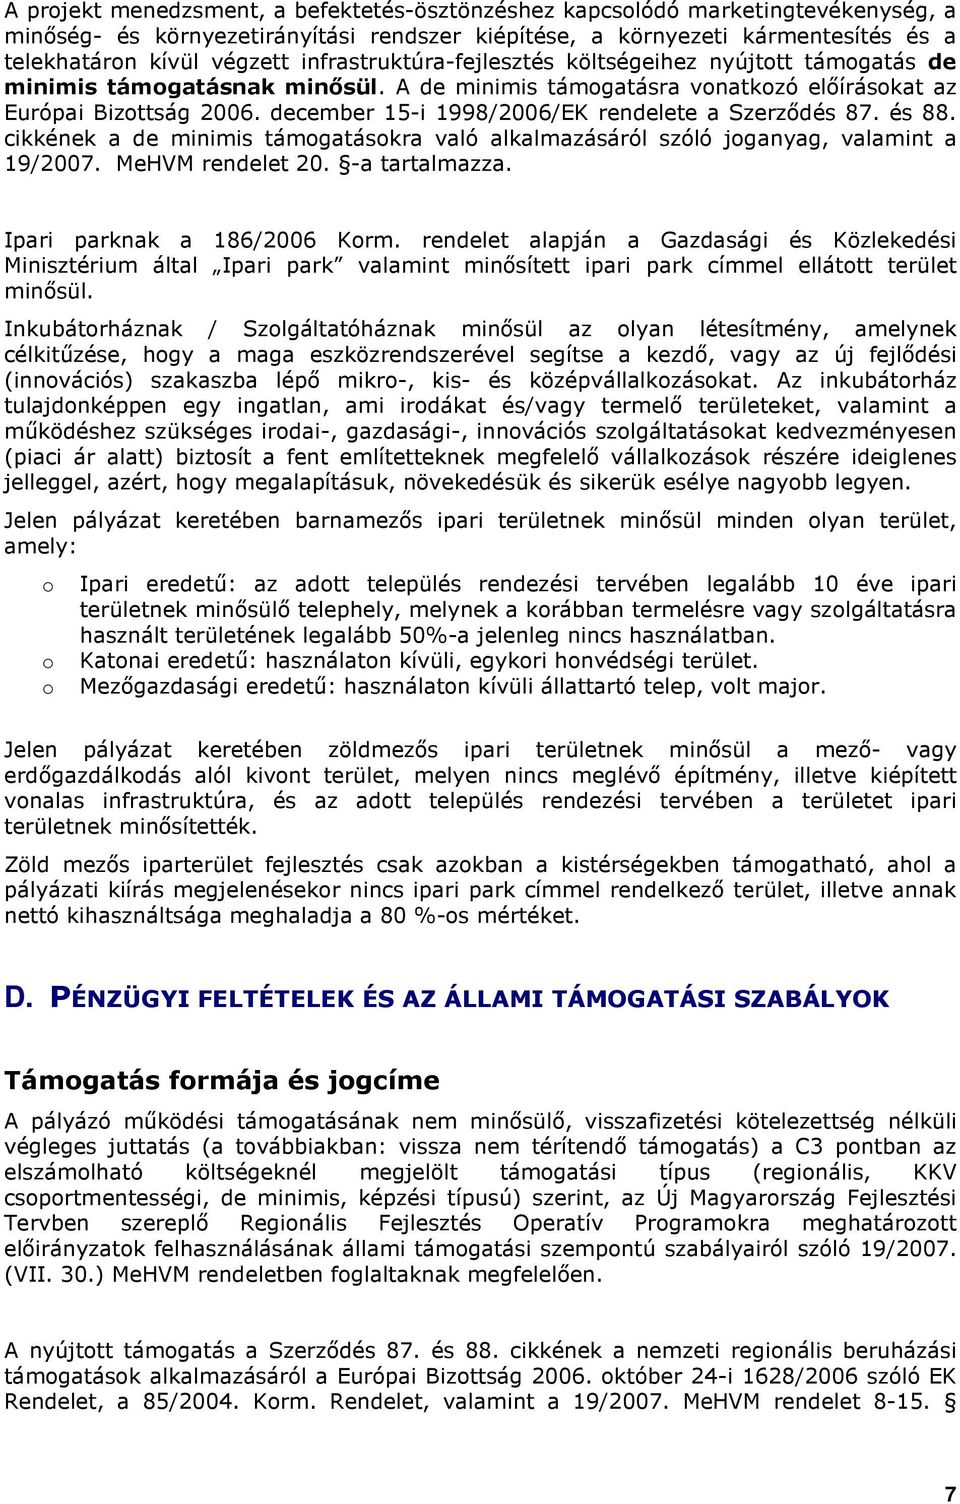 december 15-i 1998/2006/EK rendelete a Szerzıdés 87. és 88. cikkének a de minimis támgatáskra való alkalmazásáról szóló jganyag, valamint a 19/2007. MeHVM rendelet 20. -a tartalmazza.